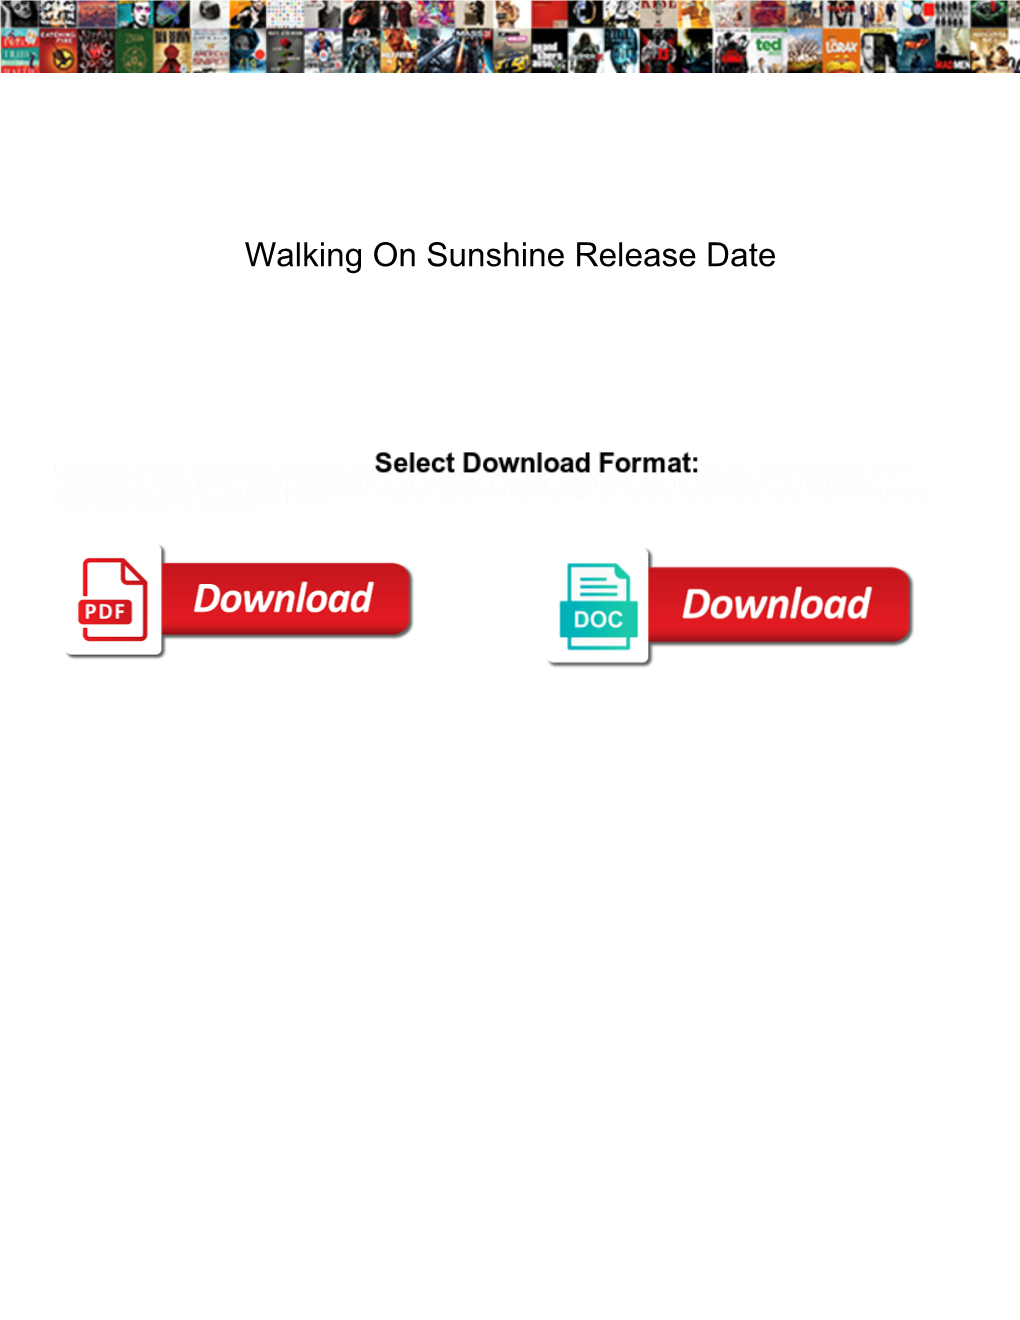 Walking on Sunshine Release Date